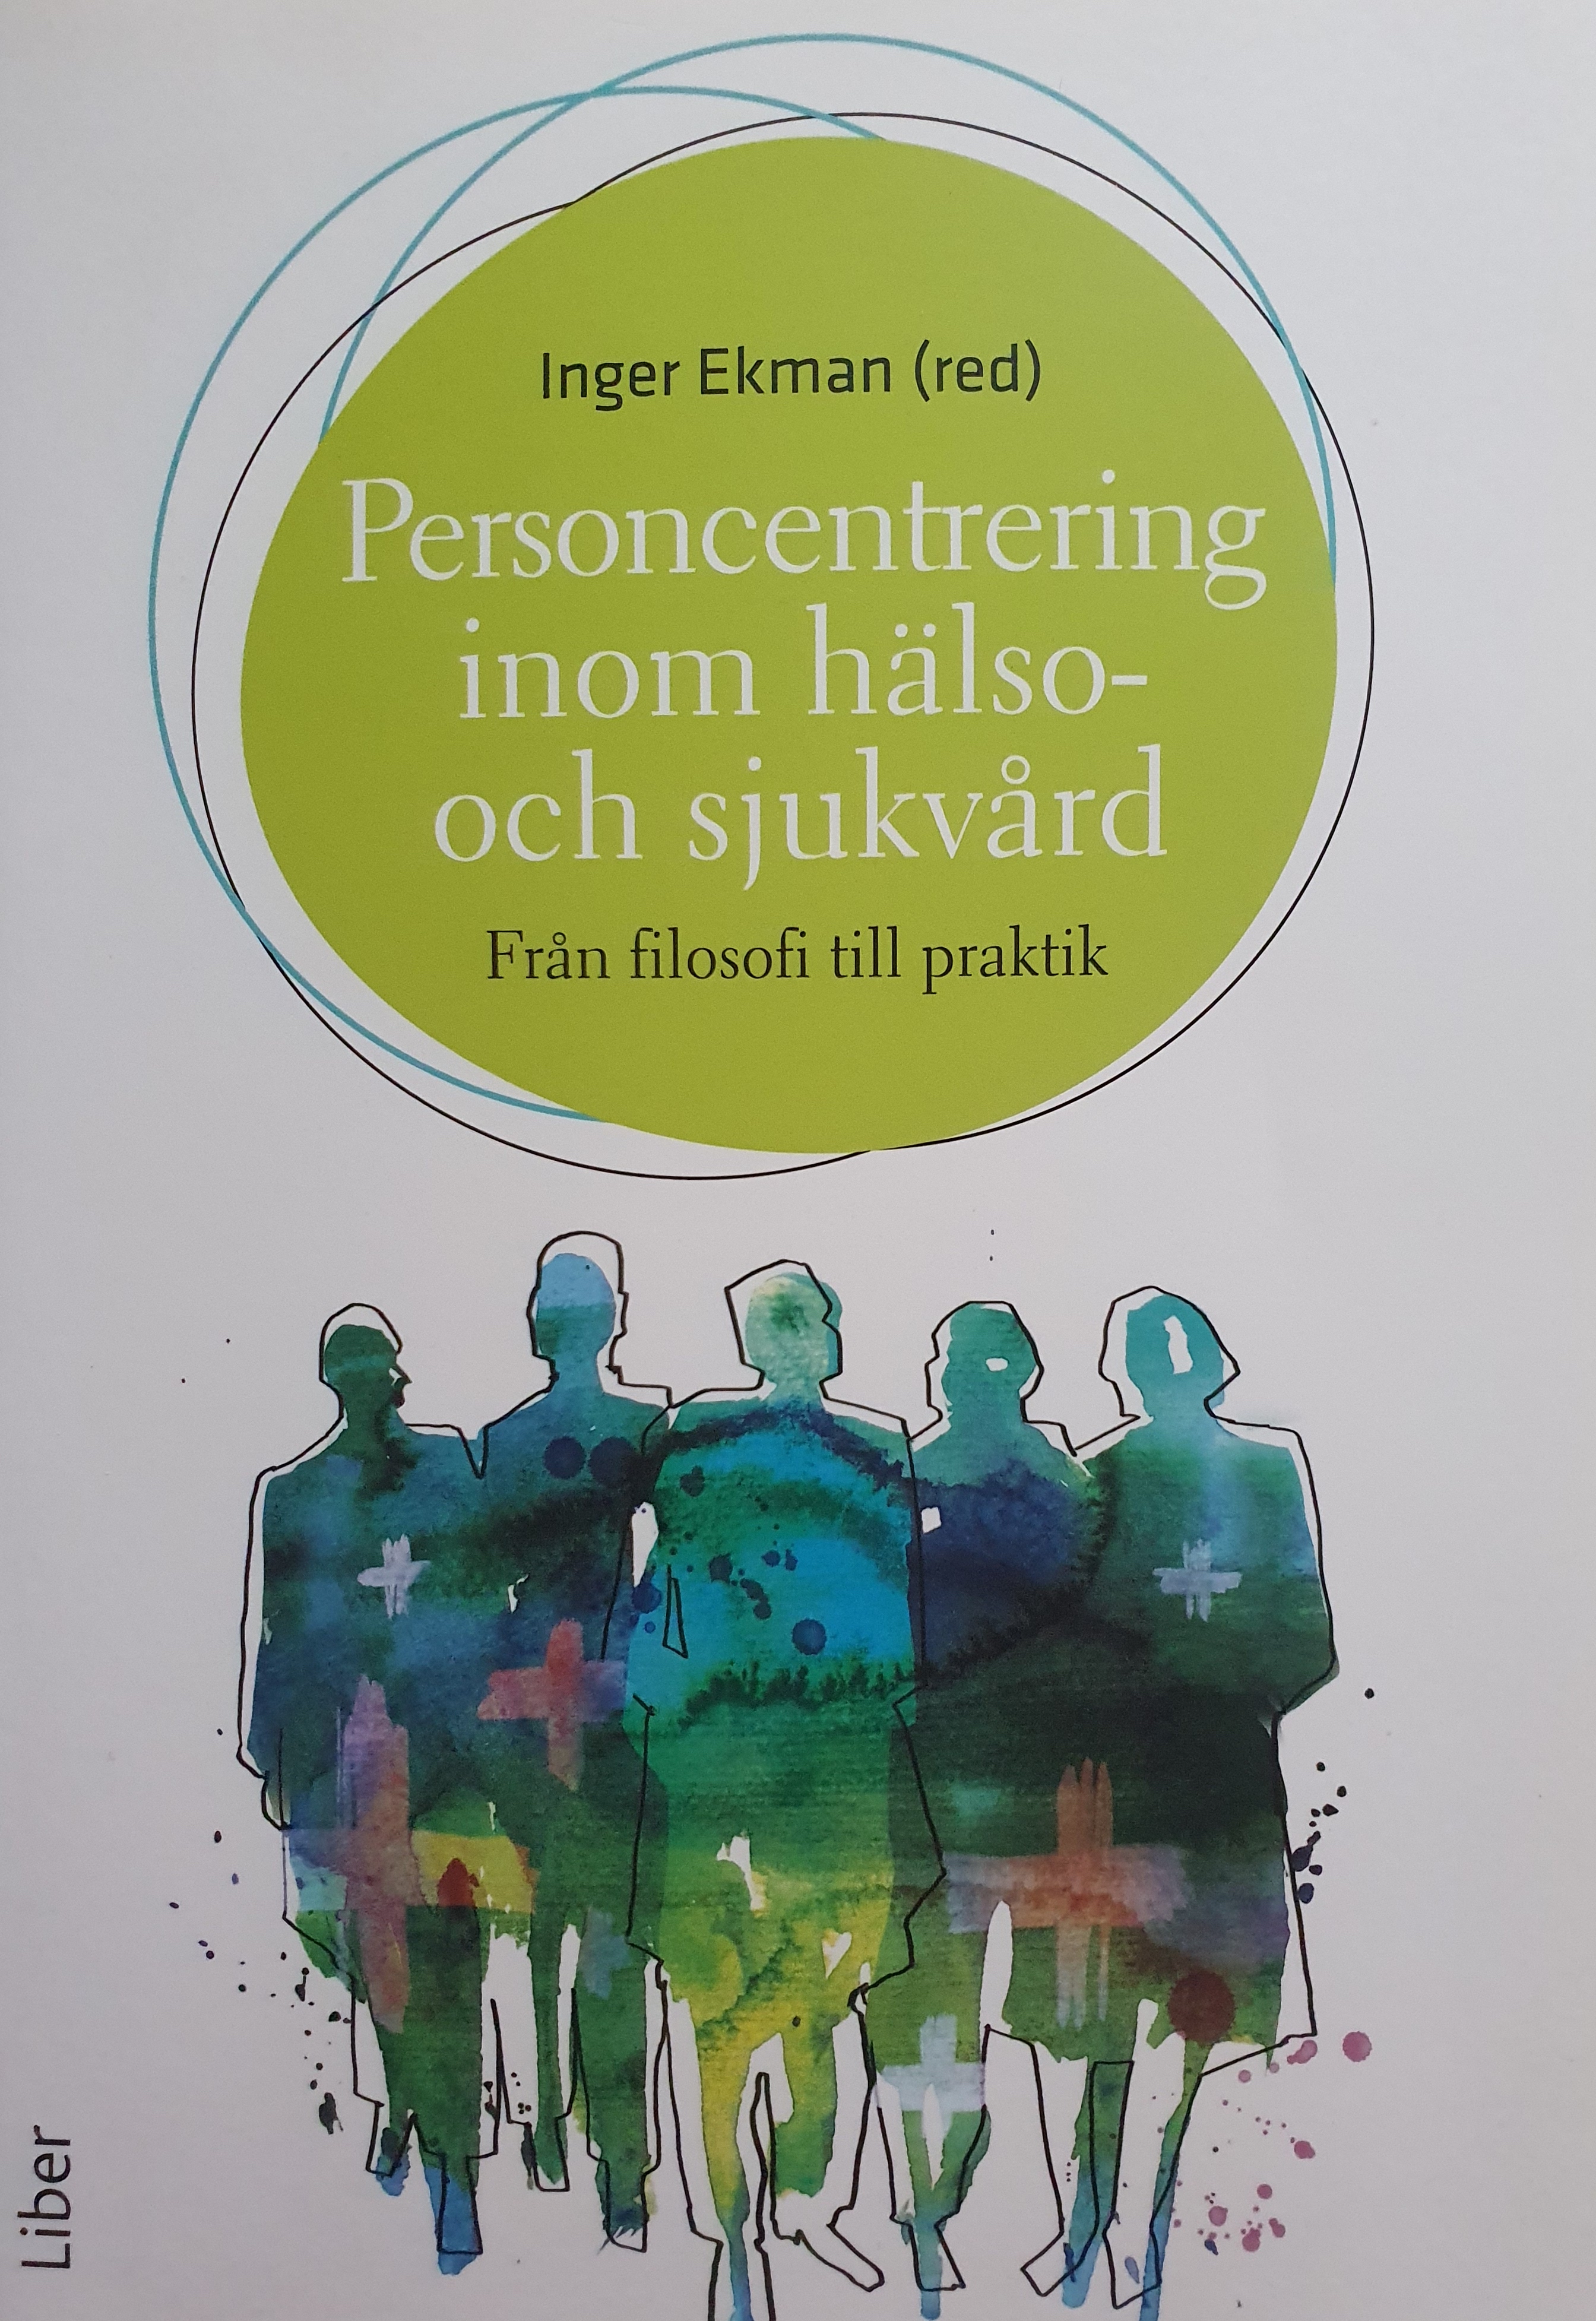 Personcentrering inom hälso-och sjukvård från filosofi till praktik; Inger Ekman; 2014